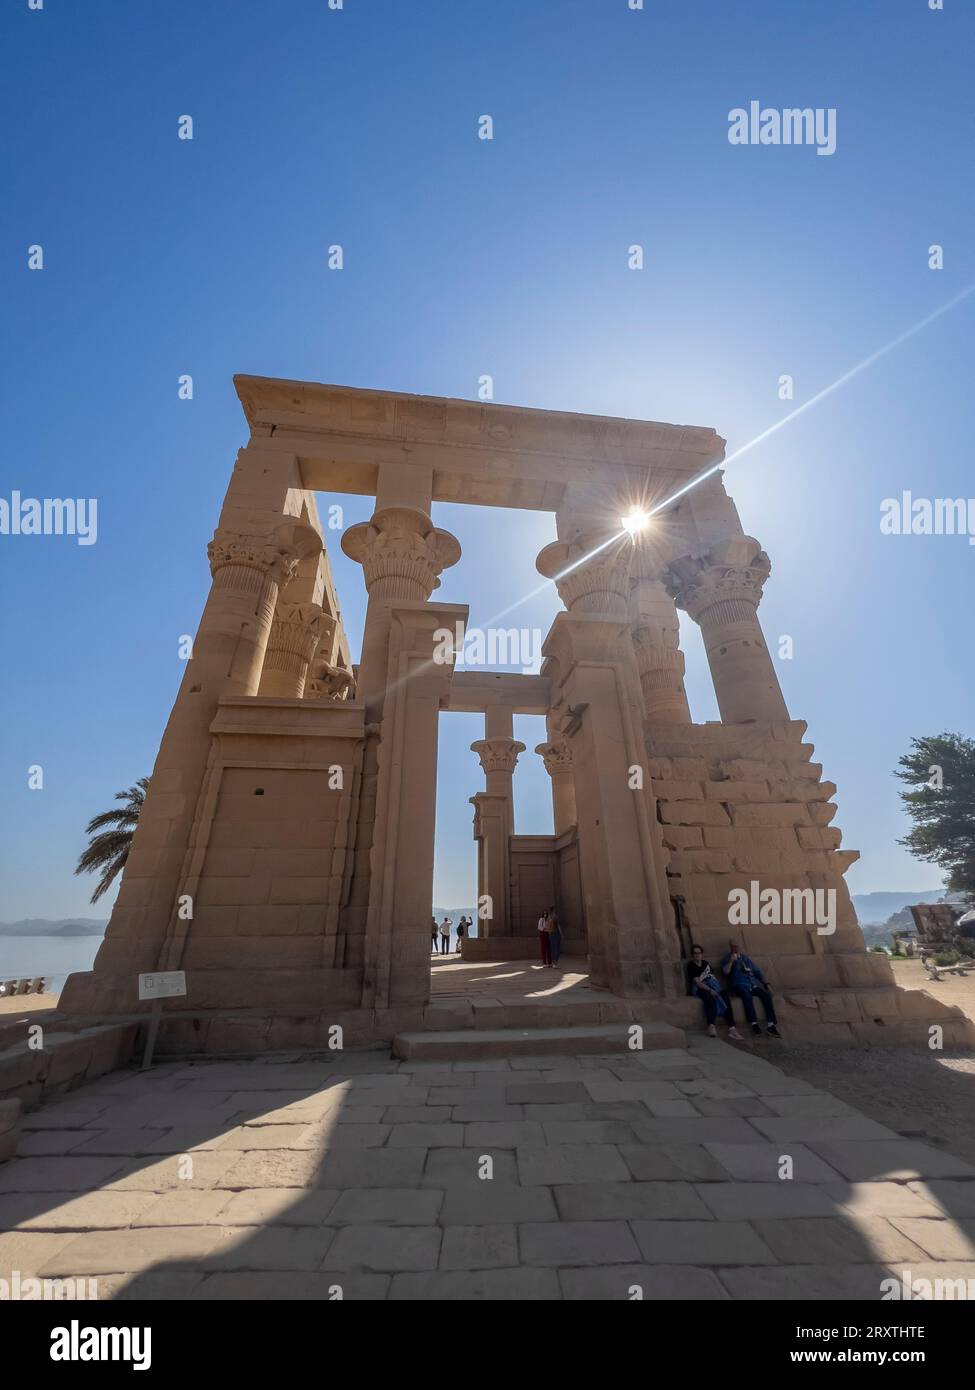 Le complexe du temple Philae, le temple d'Isis, site du patrimoine mondial de l'UNESCO, actuellement sur l'île d'Agilkia, Egypte, Afrique du Nord, Afrique Banque D'Images